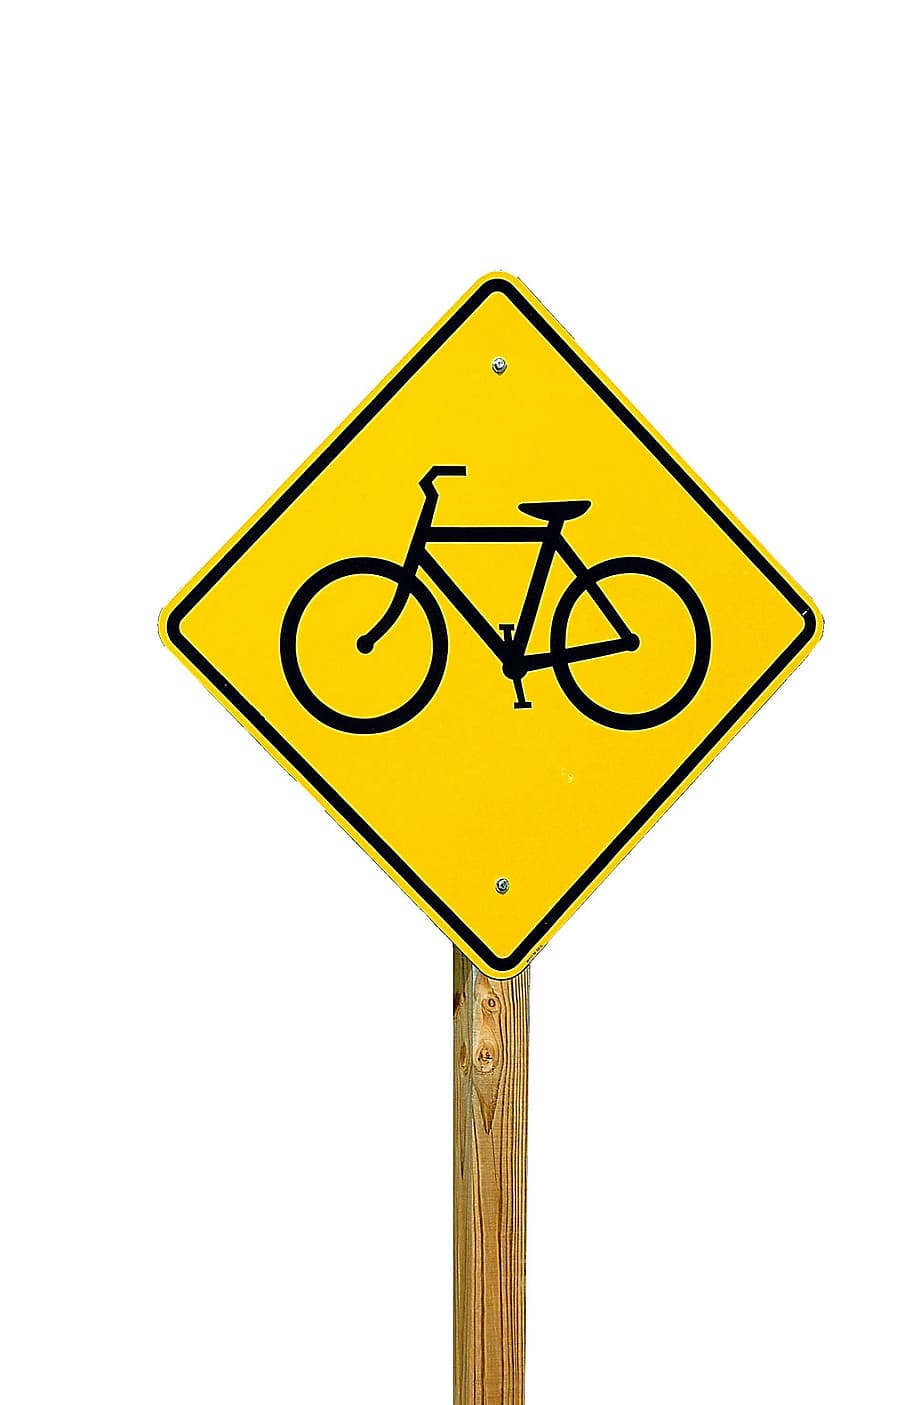 warning, traffic, danger, safety, bike, bicycle, road, sign